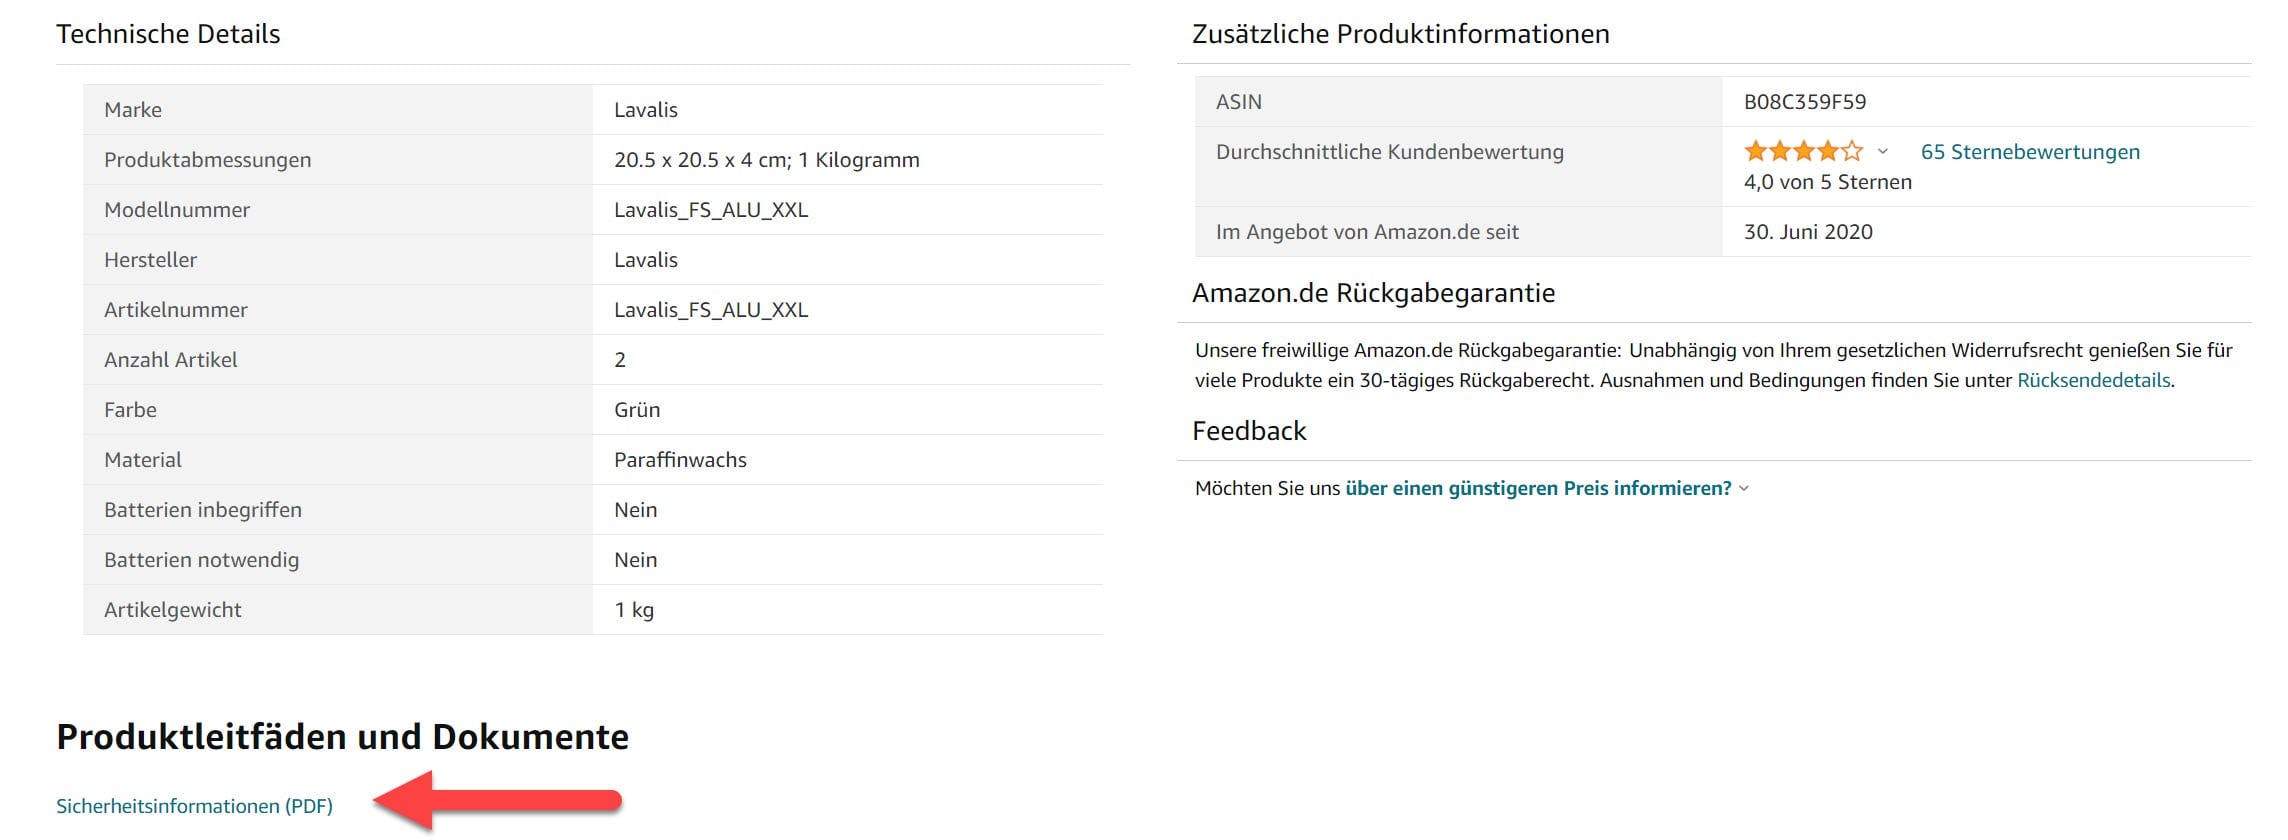 Amazon Dokumente und Produktleitfäden